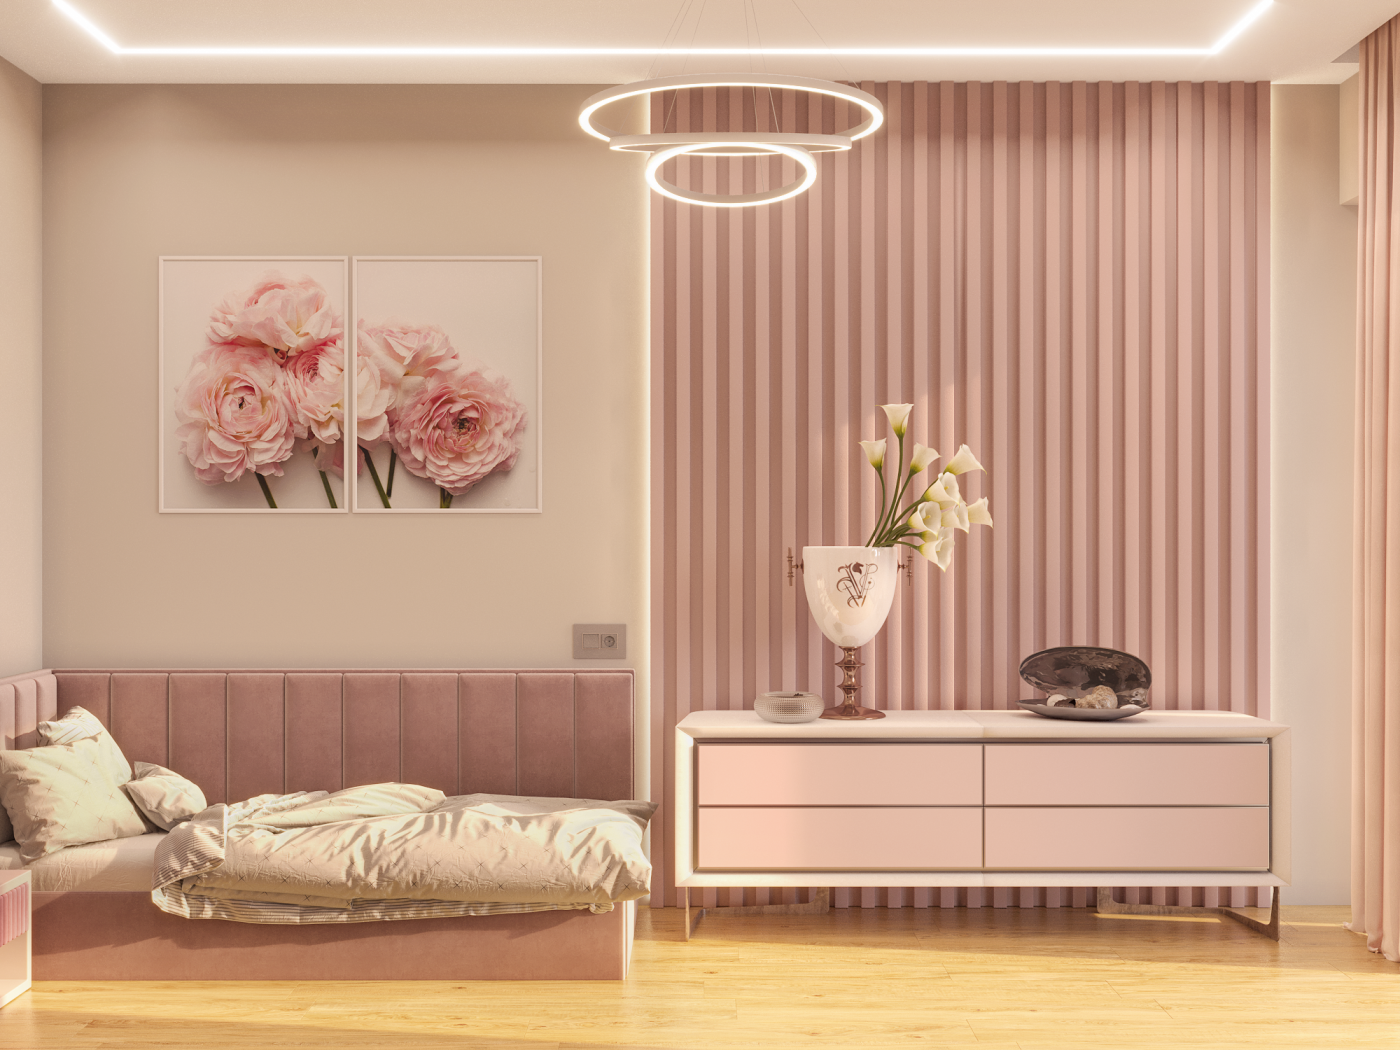 bedroom in pink tones